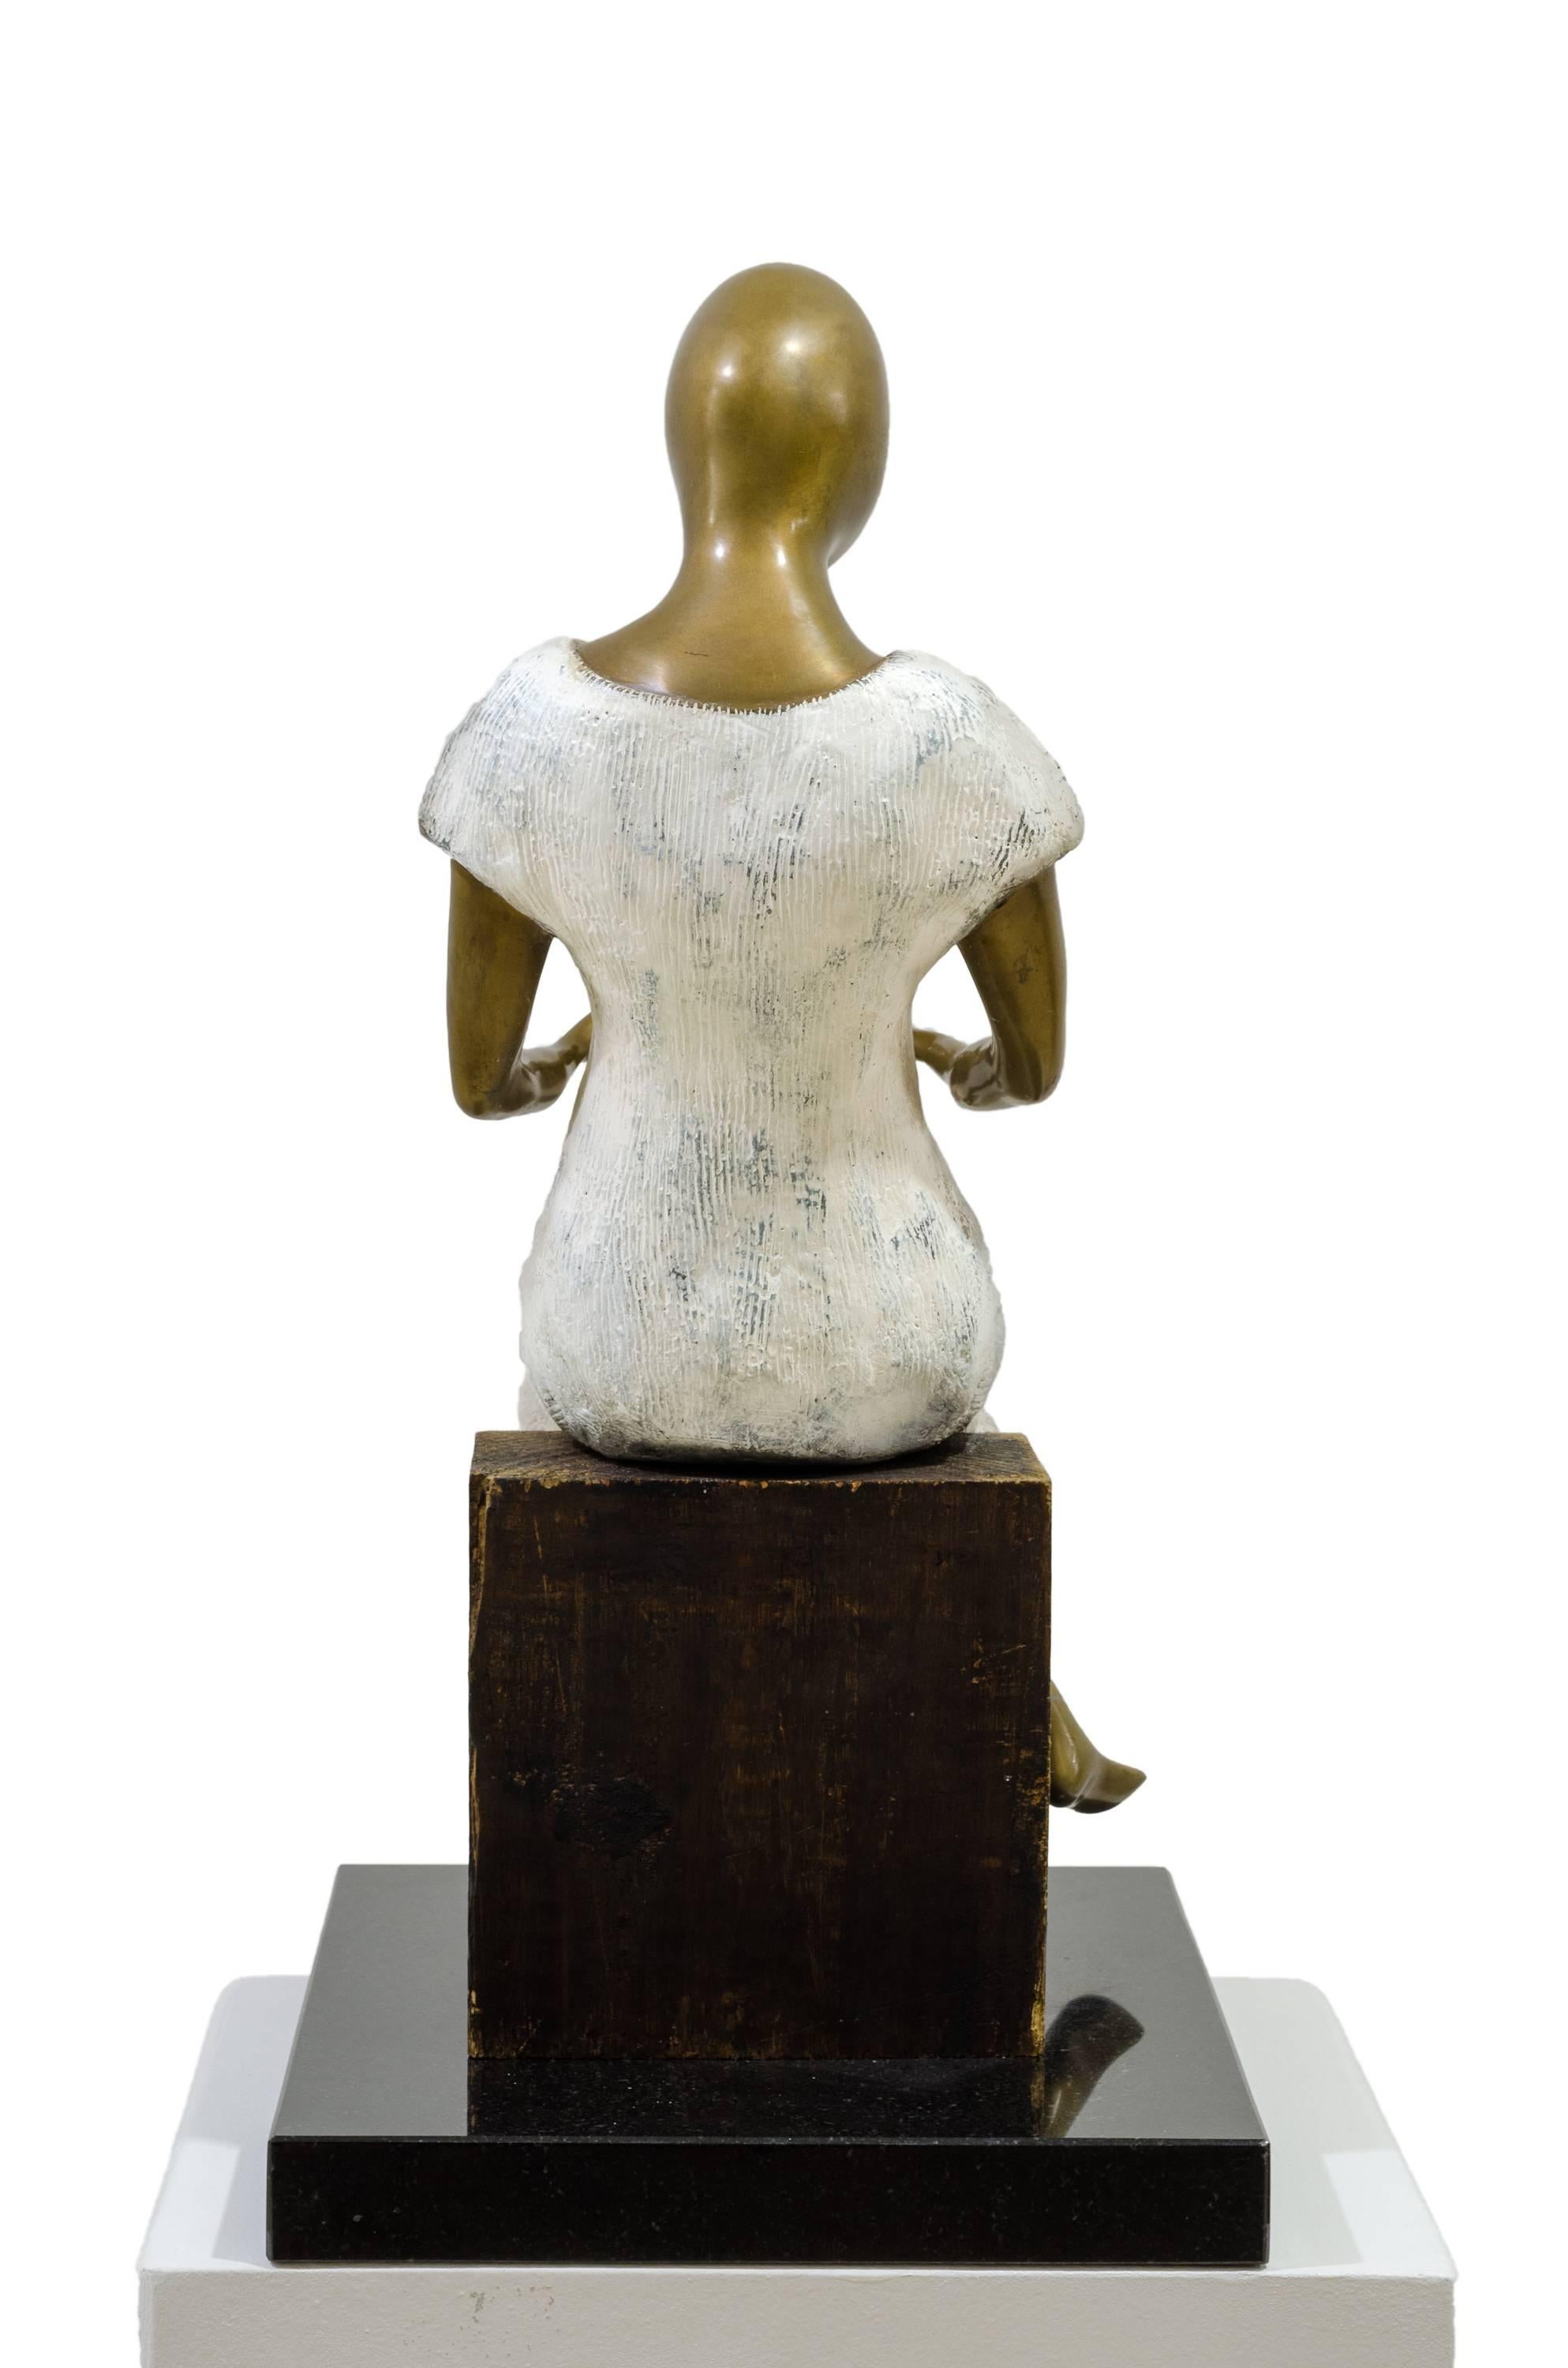 Beatriz Gerenstein contemporary bronze sculpture 